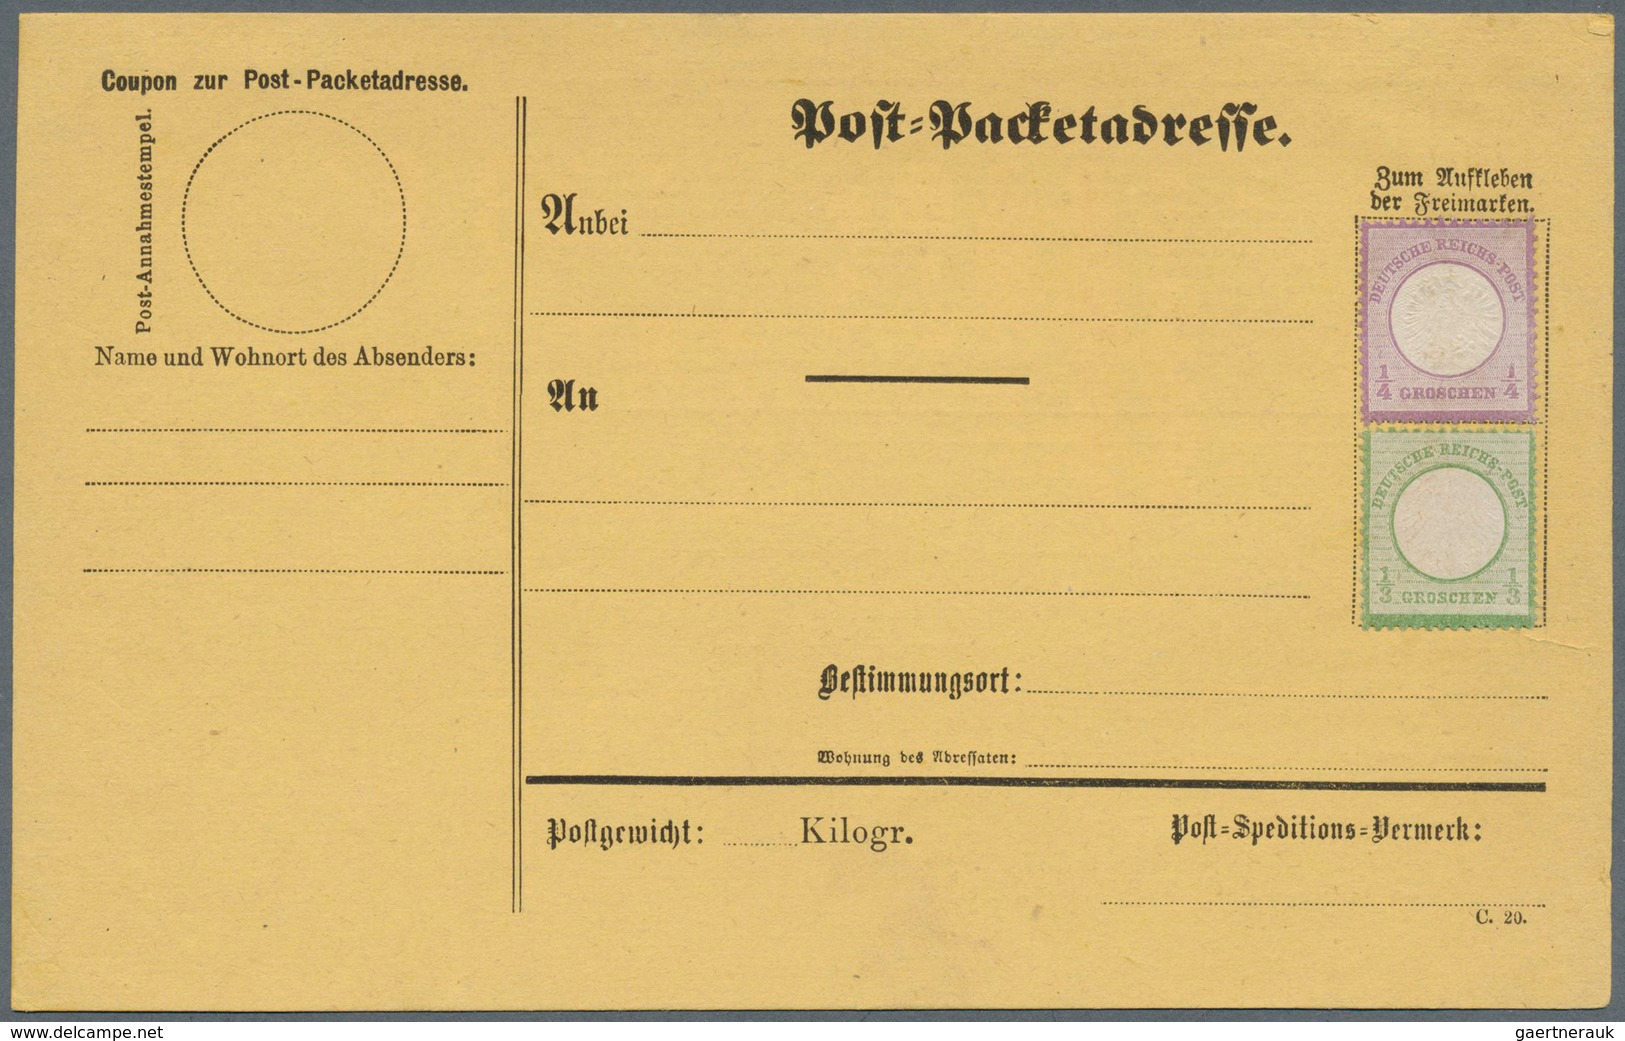 31003 Deutschland: 1828/1874, interessantes Konvolut mit ca.80 Belegen ab Vorphilatelie bis Brustschild, d